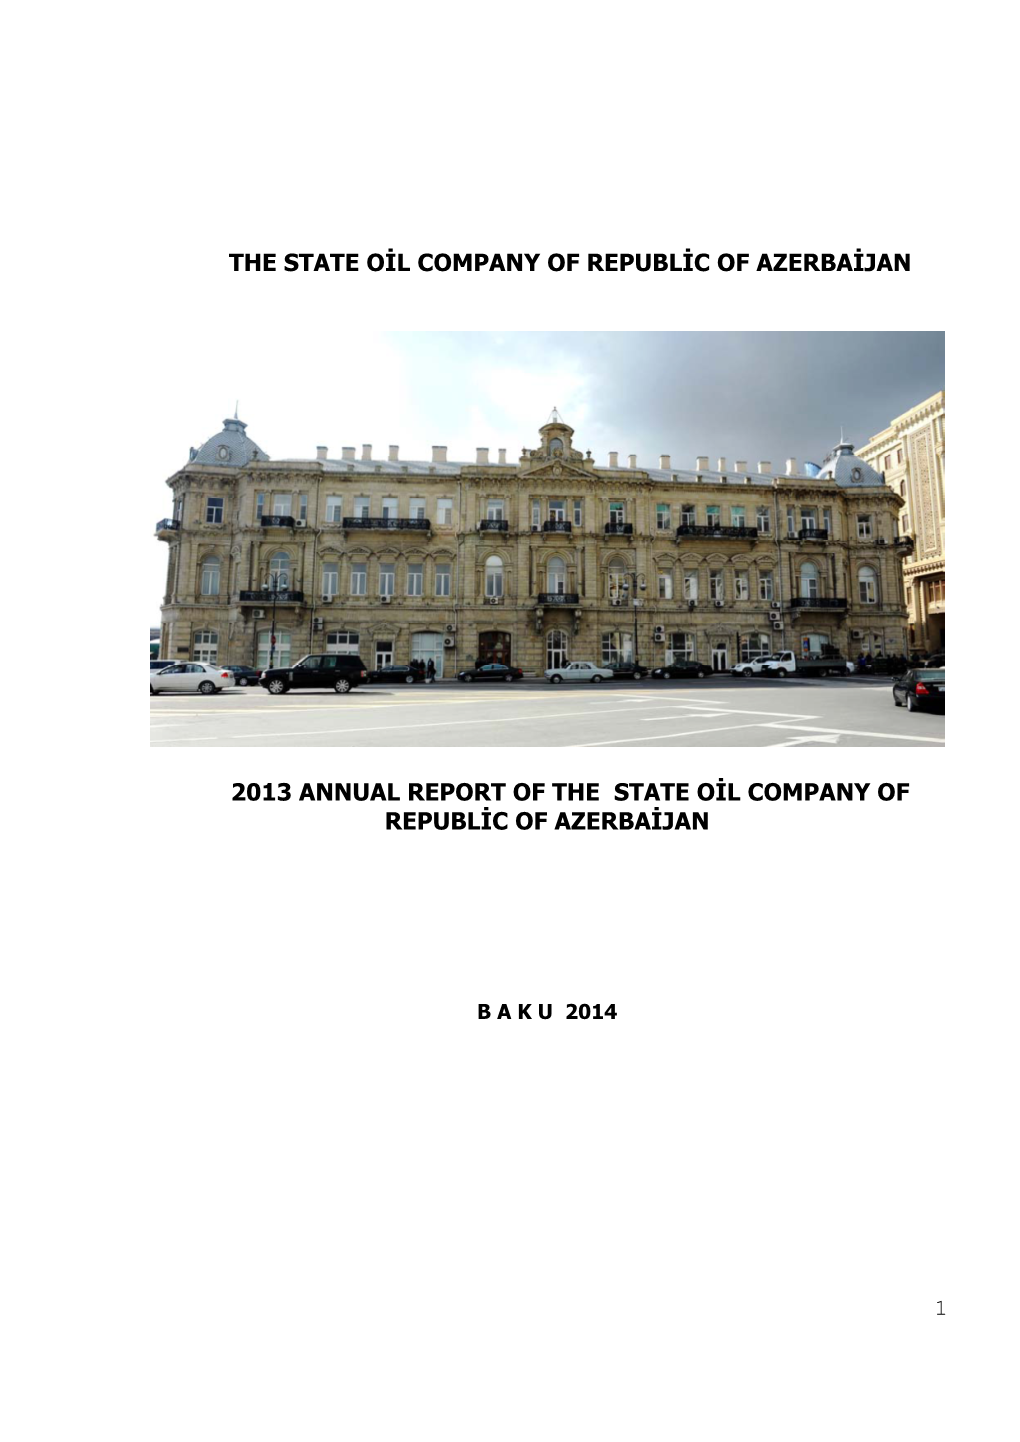 The State Oil Company of Republic of Azerbaijan 2013